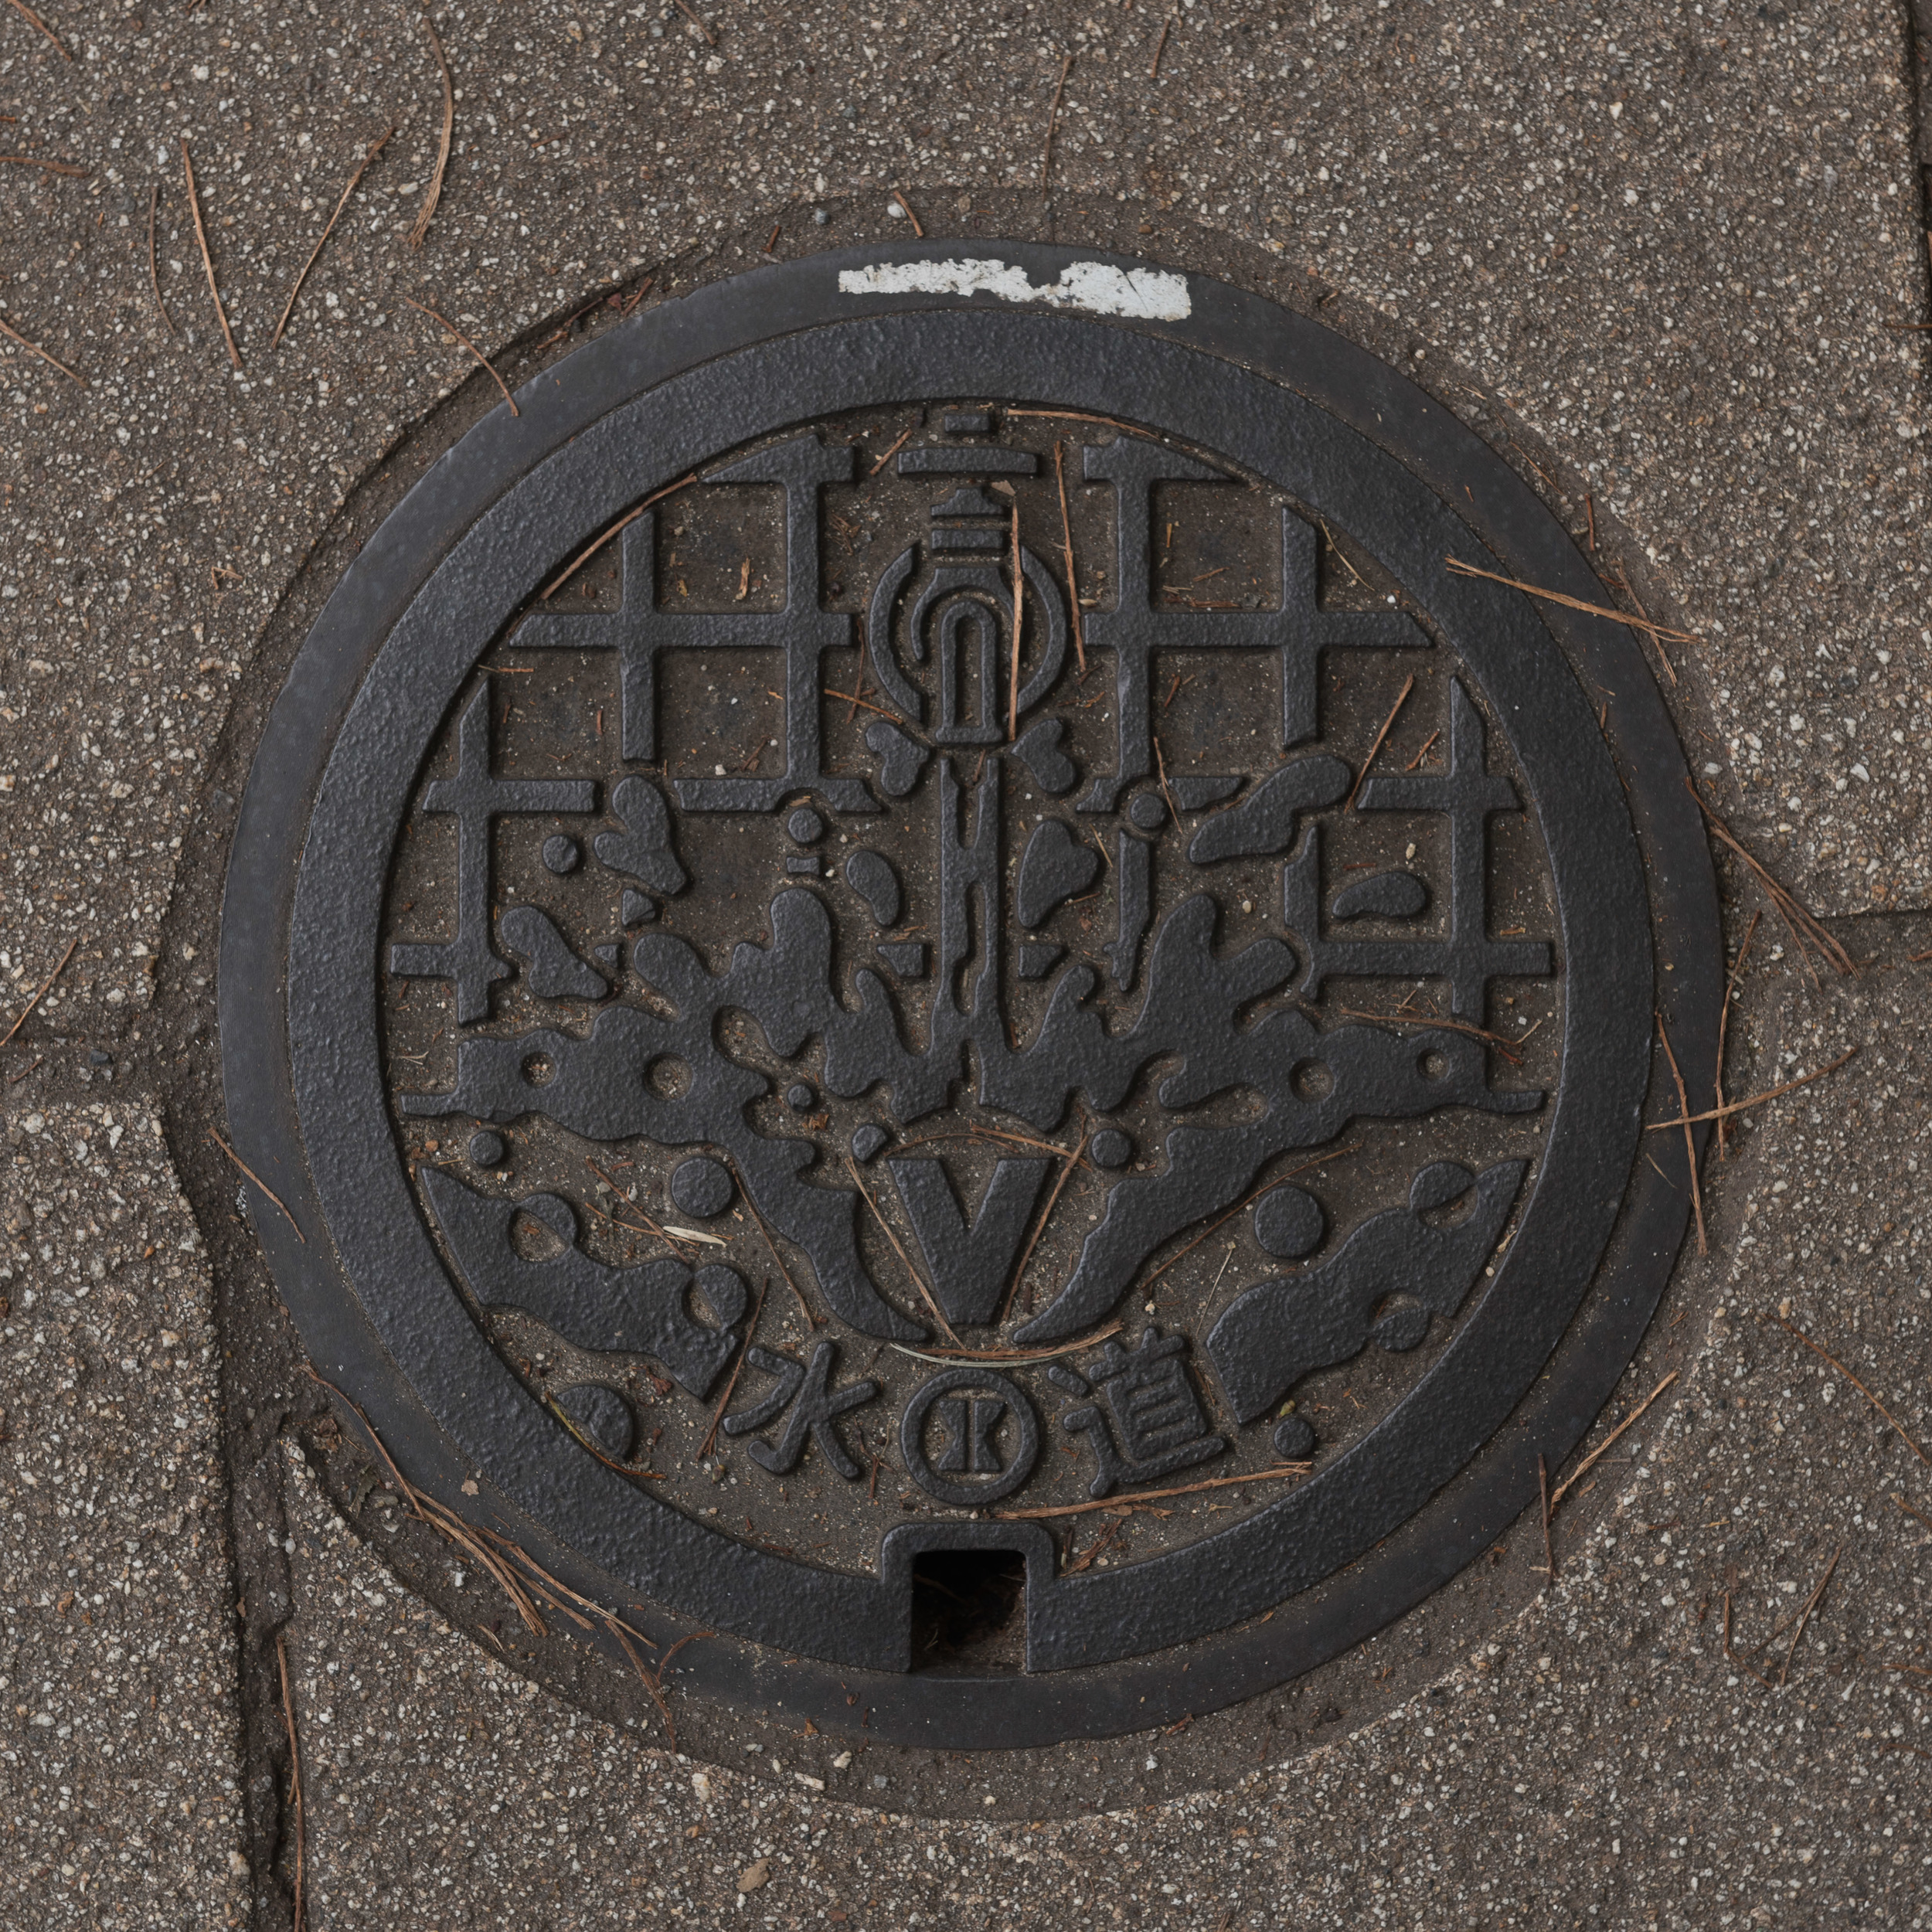 Japan_Manhole-7.jpg